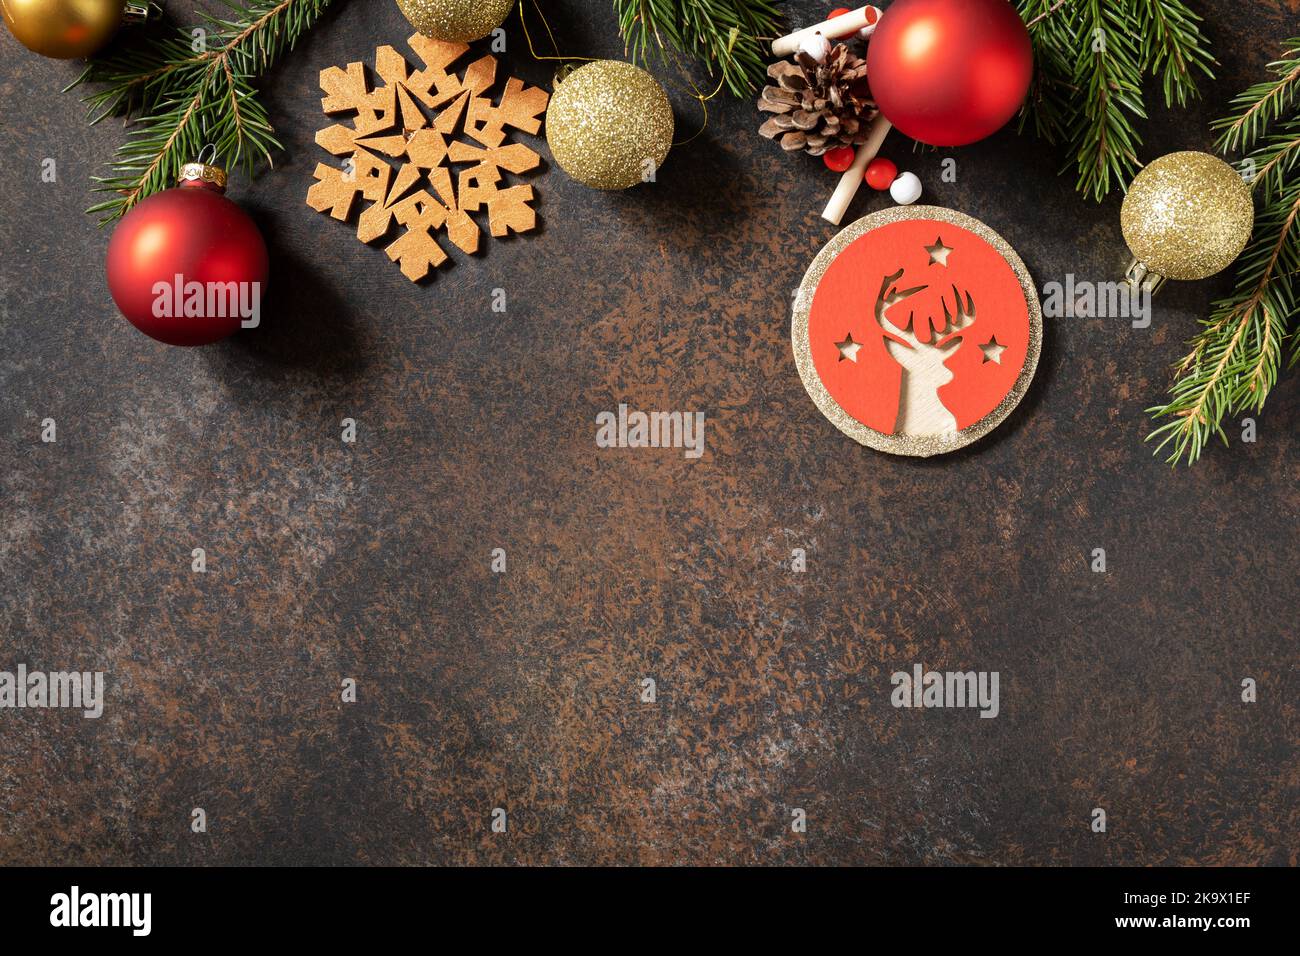 Weihnachten braun Stein Hintergrund mit Weihnachtsbaum und roten Kugeln Dekor. Blick von oben. Speicherplatz kopieren. Stockfoto